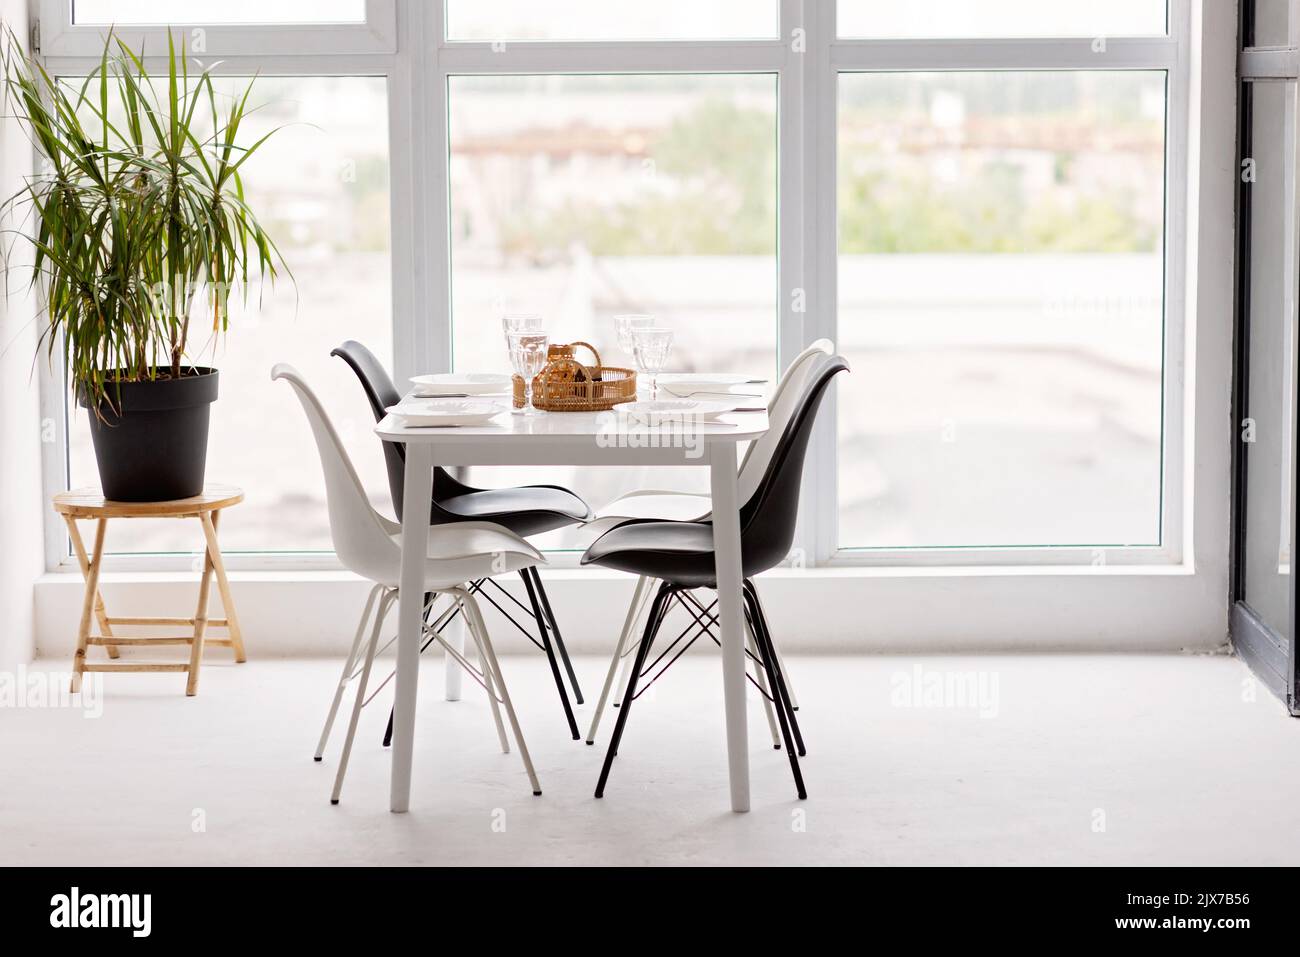 Modernes Interieur einer gemütlichen Küche im Esszimmer, weiße Möbel, vor dem Hintergrund eines Panoramafensters. Konzeptionelles Dekor, Haushypothek Stockfoto